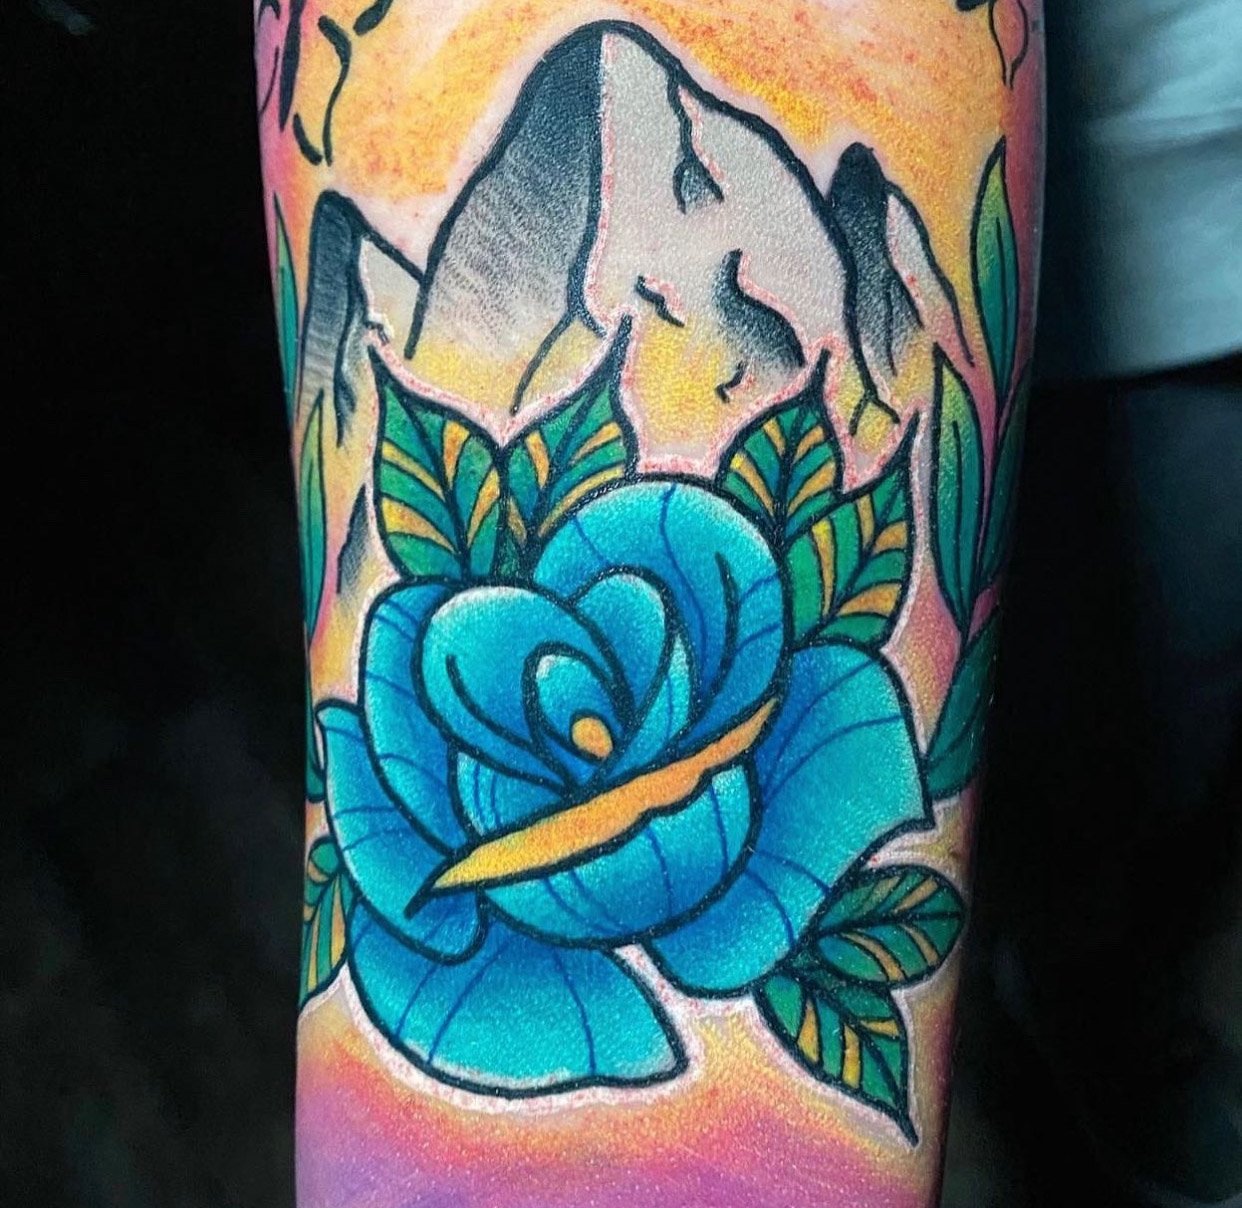 Tattoos  Jessi Lawson  Artist  Colorful sleeve tattoos Floral tattoo  sleeve Full sleeve tattoos